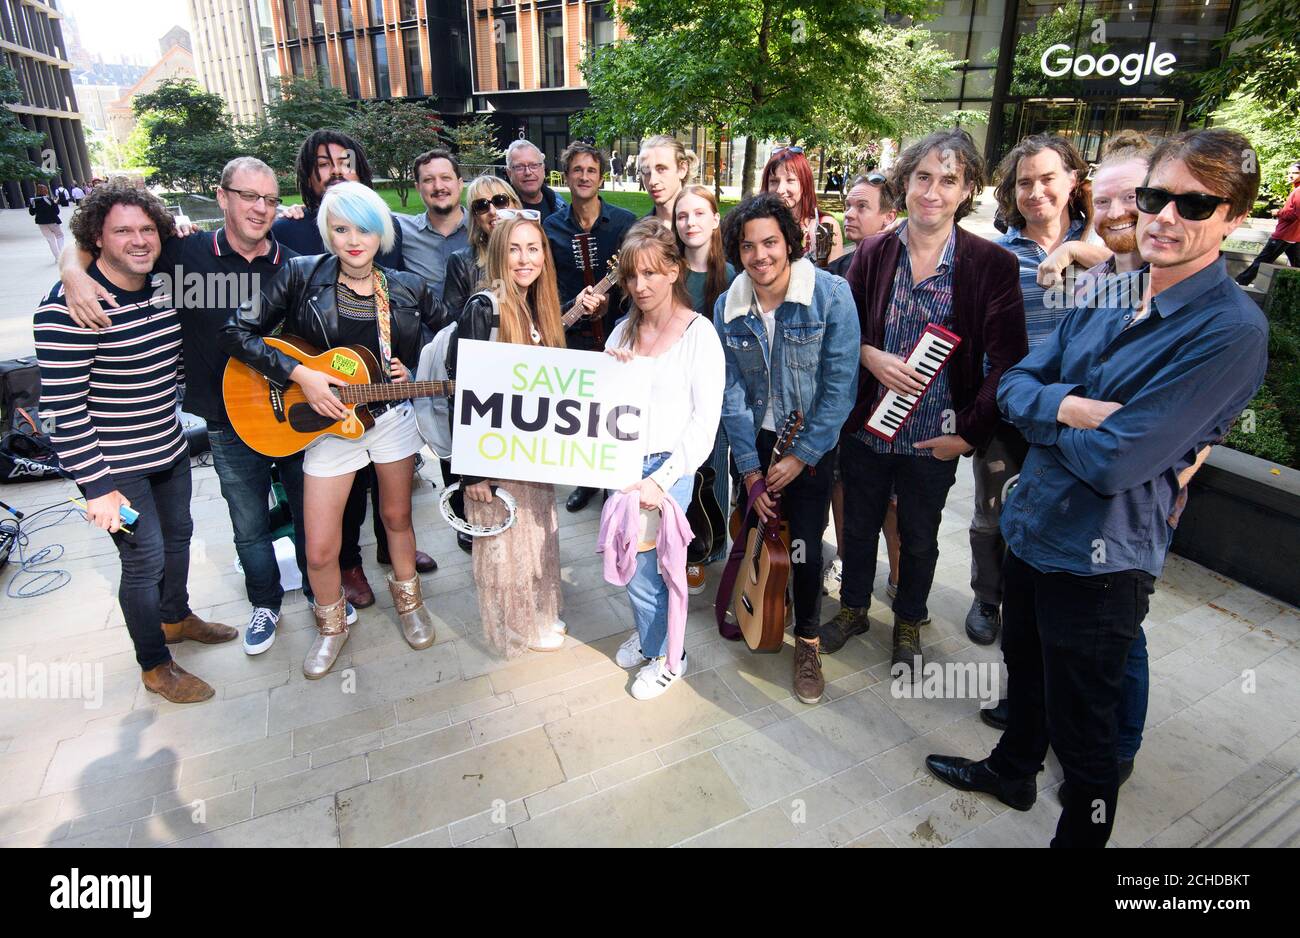 Im Rahmen der Kampagne #LoveMusic, die sich für die Aktualisierung des Urheberrechts durch die EU am 12. September einsetzt, versammeln sich Aktivisten vor den Büros von YouTube in Kings Cross, London. Stockfoto